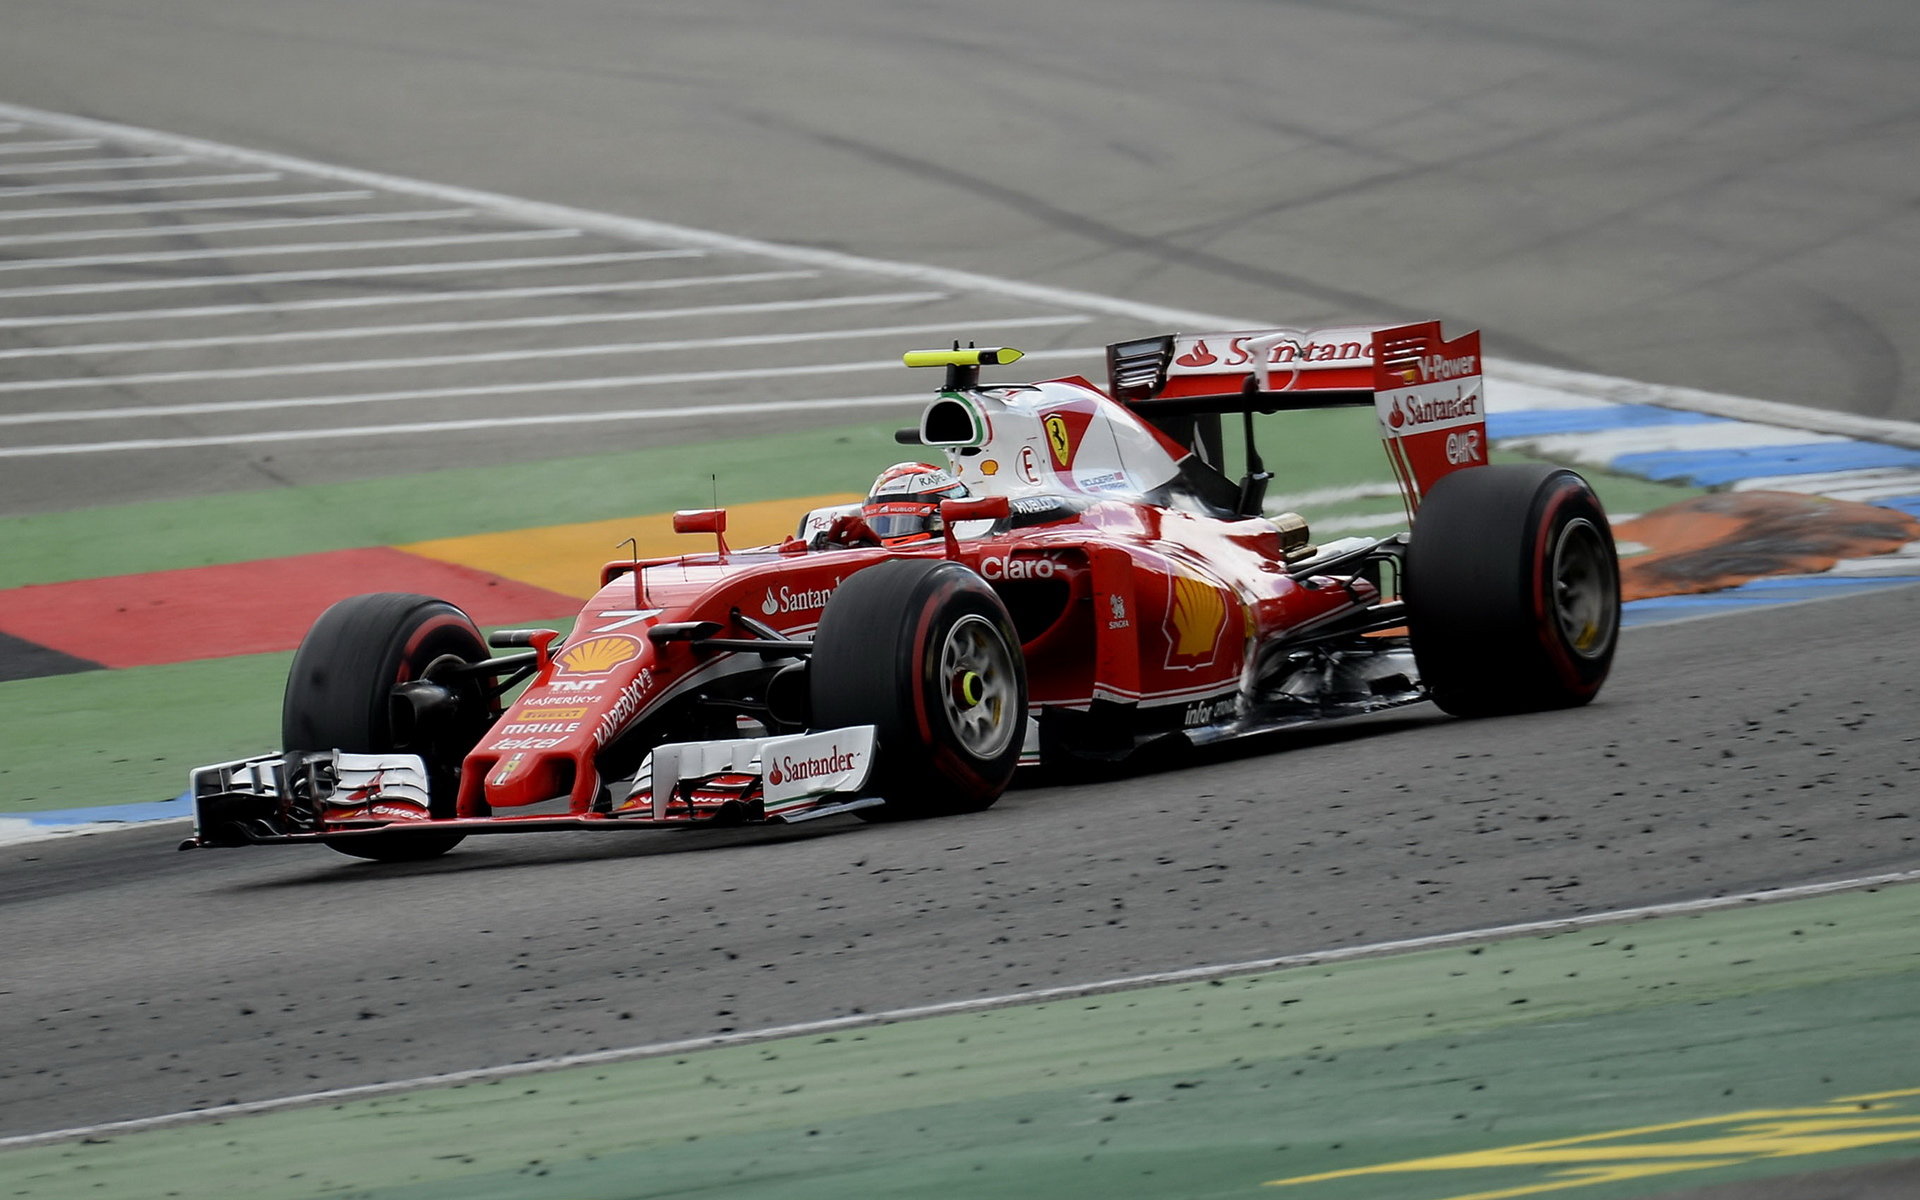 Po návratu k Ferrari Kimi stále čeká na jubilejní desáté vítězství pro Maranello